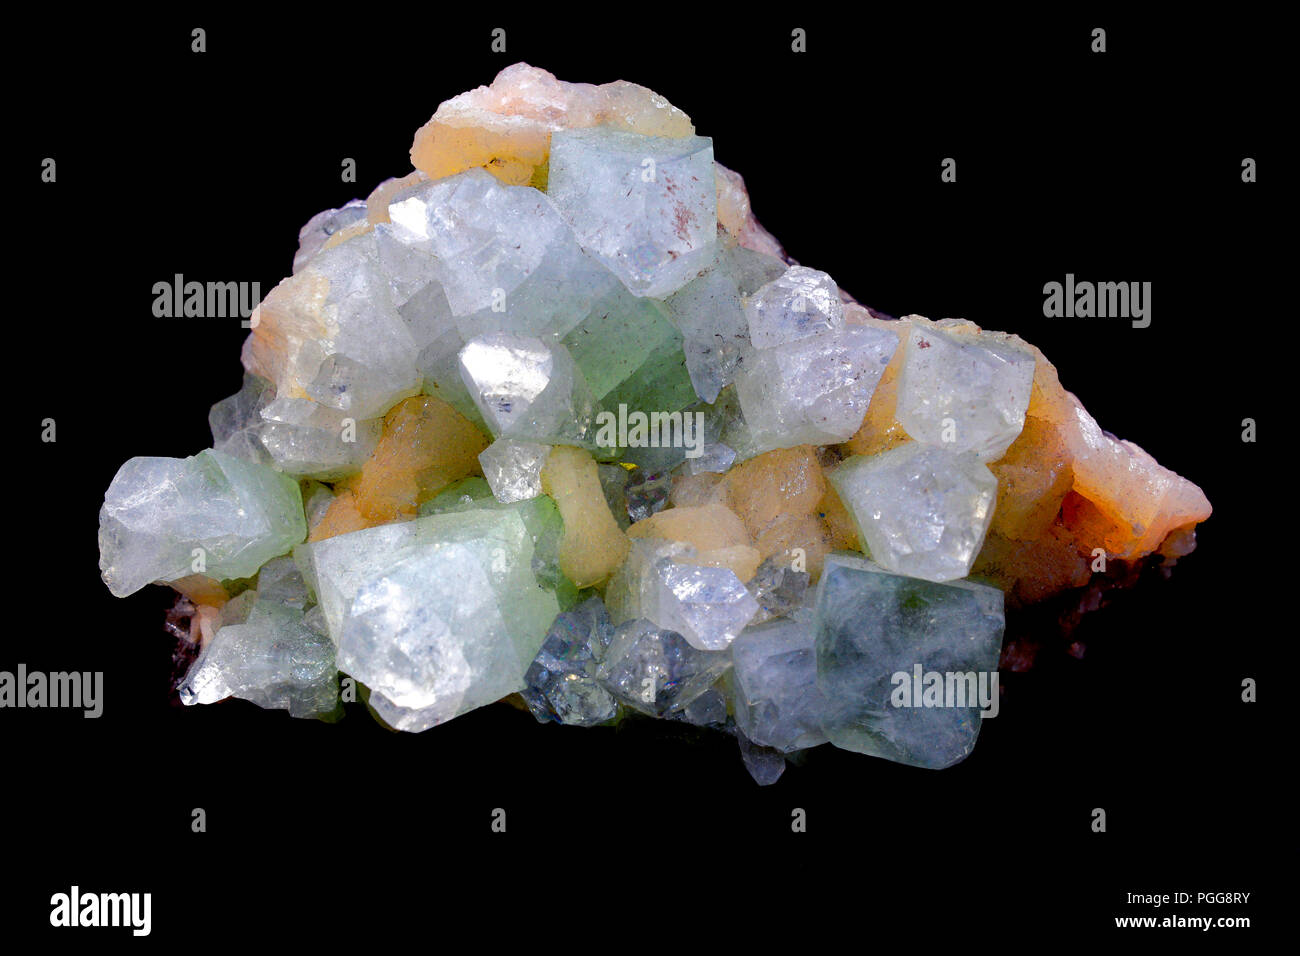 Apophyllite Estilbita y Crystal. Una hermosa mezcla de transparente a blanco y cristales de Stilbita rosa Apophyllite Foto de stock